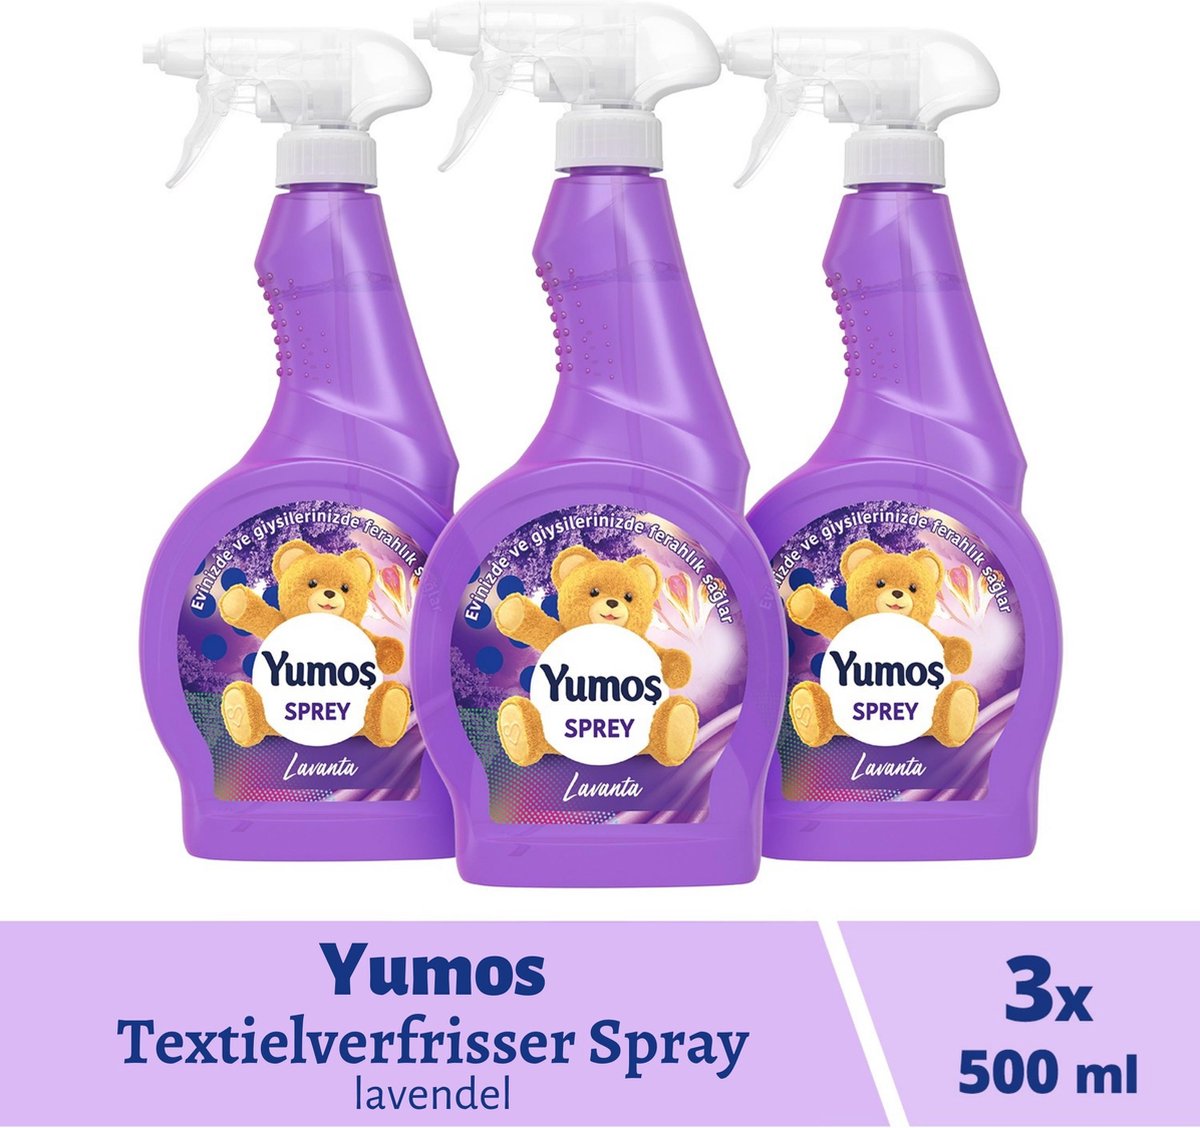 Yumos Textile Freshener Lavande 3x 500ml, spray textile élimine les odeurs  et laisse